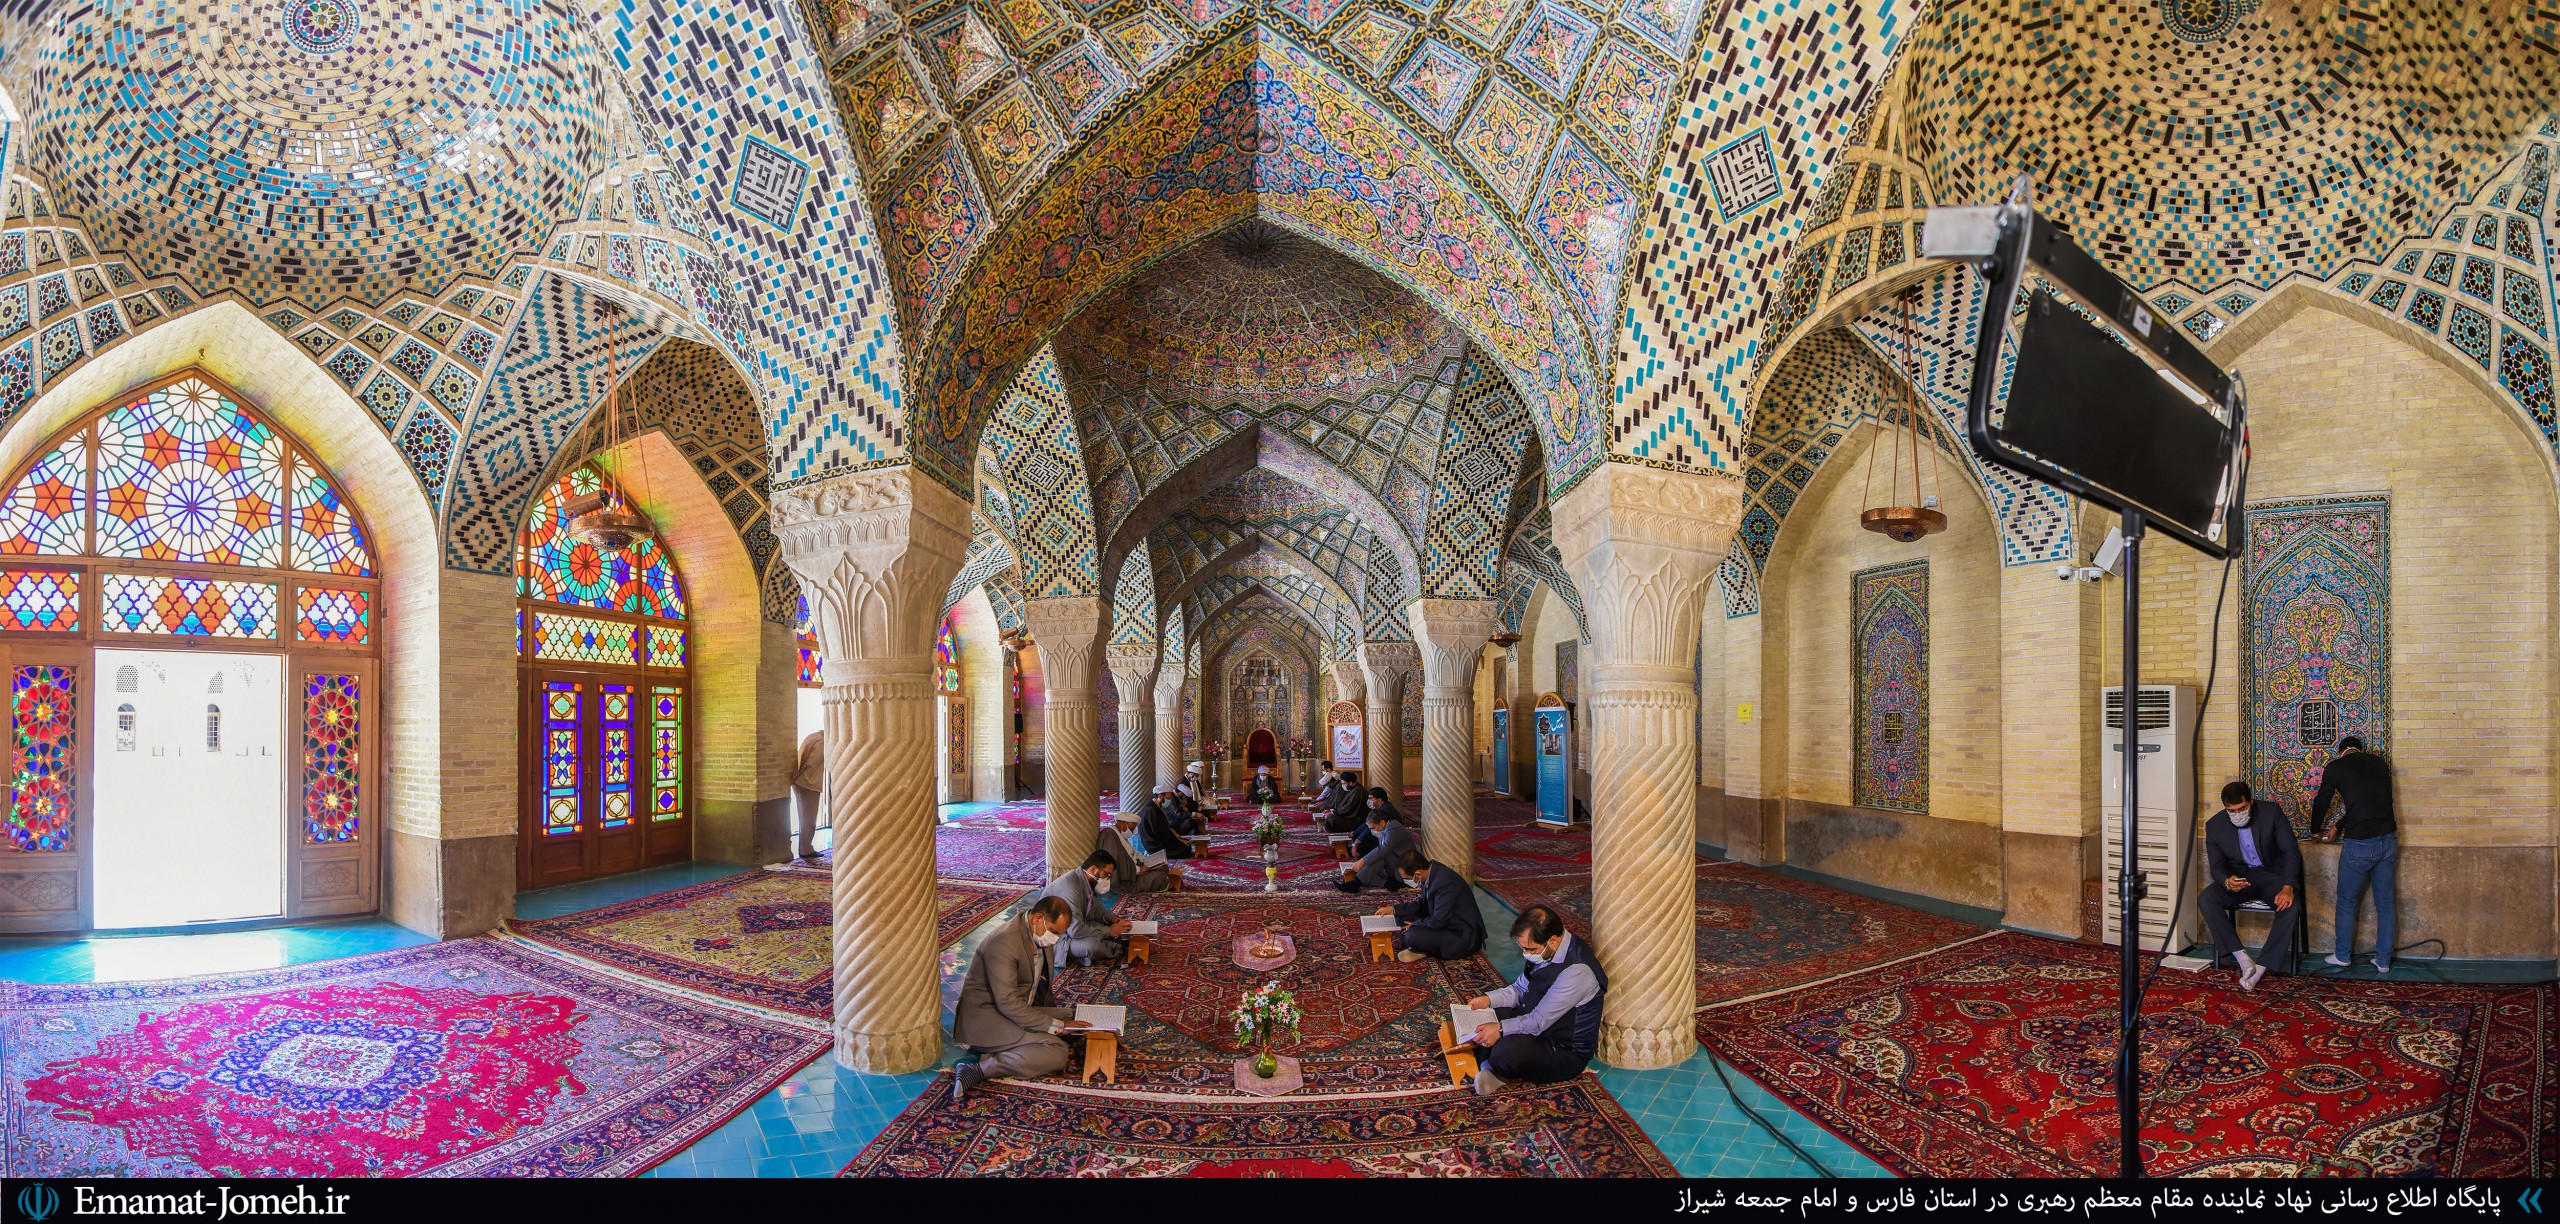 محفل انس با قرآن کریم و سخنرانی آیت الله دژکام در مسجد نصیرالملک شیراز